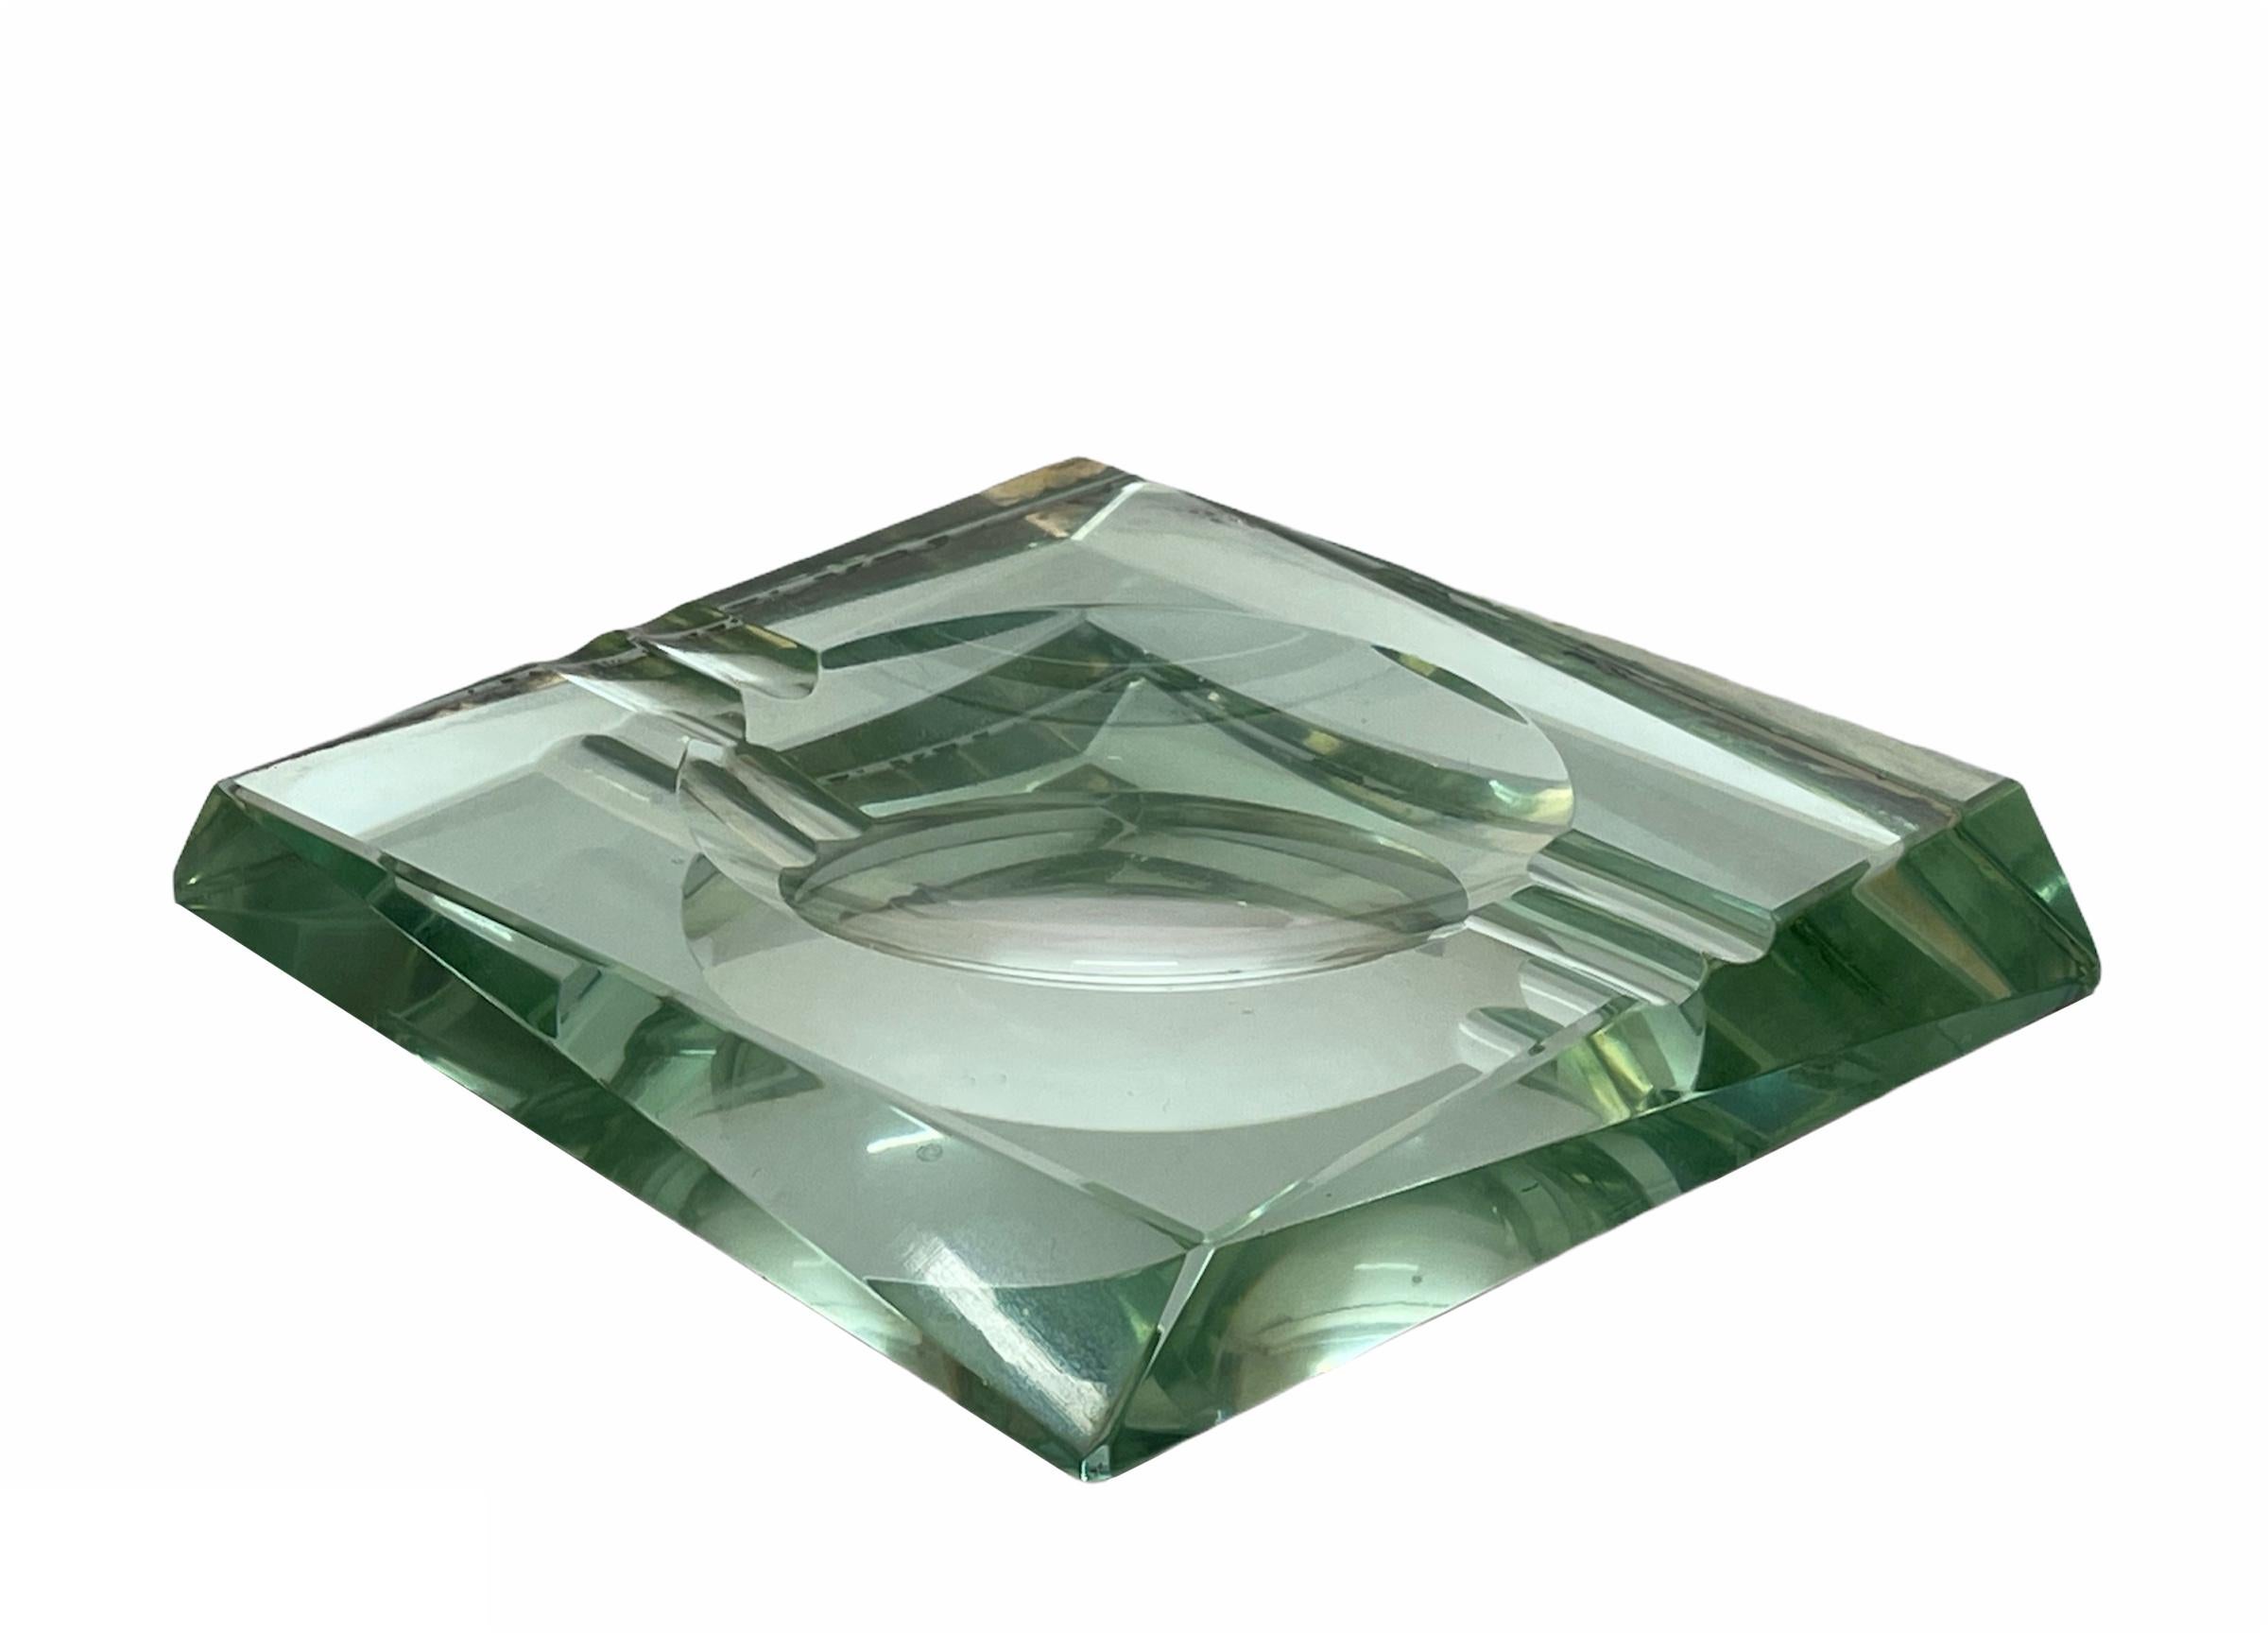 Mirror Fontana Arte Midcentury Green Crystal Glass Squared Italian Ashtray, 1960s